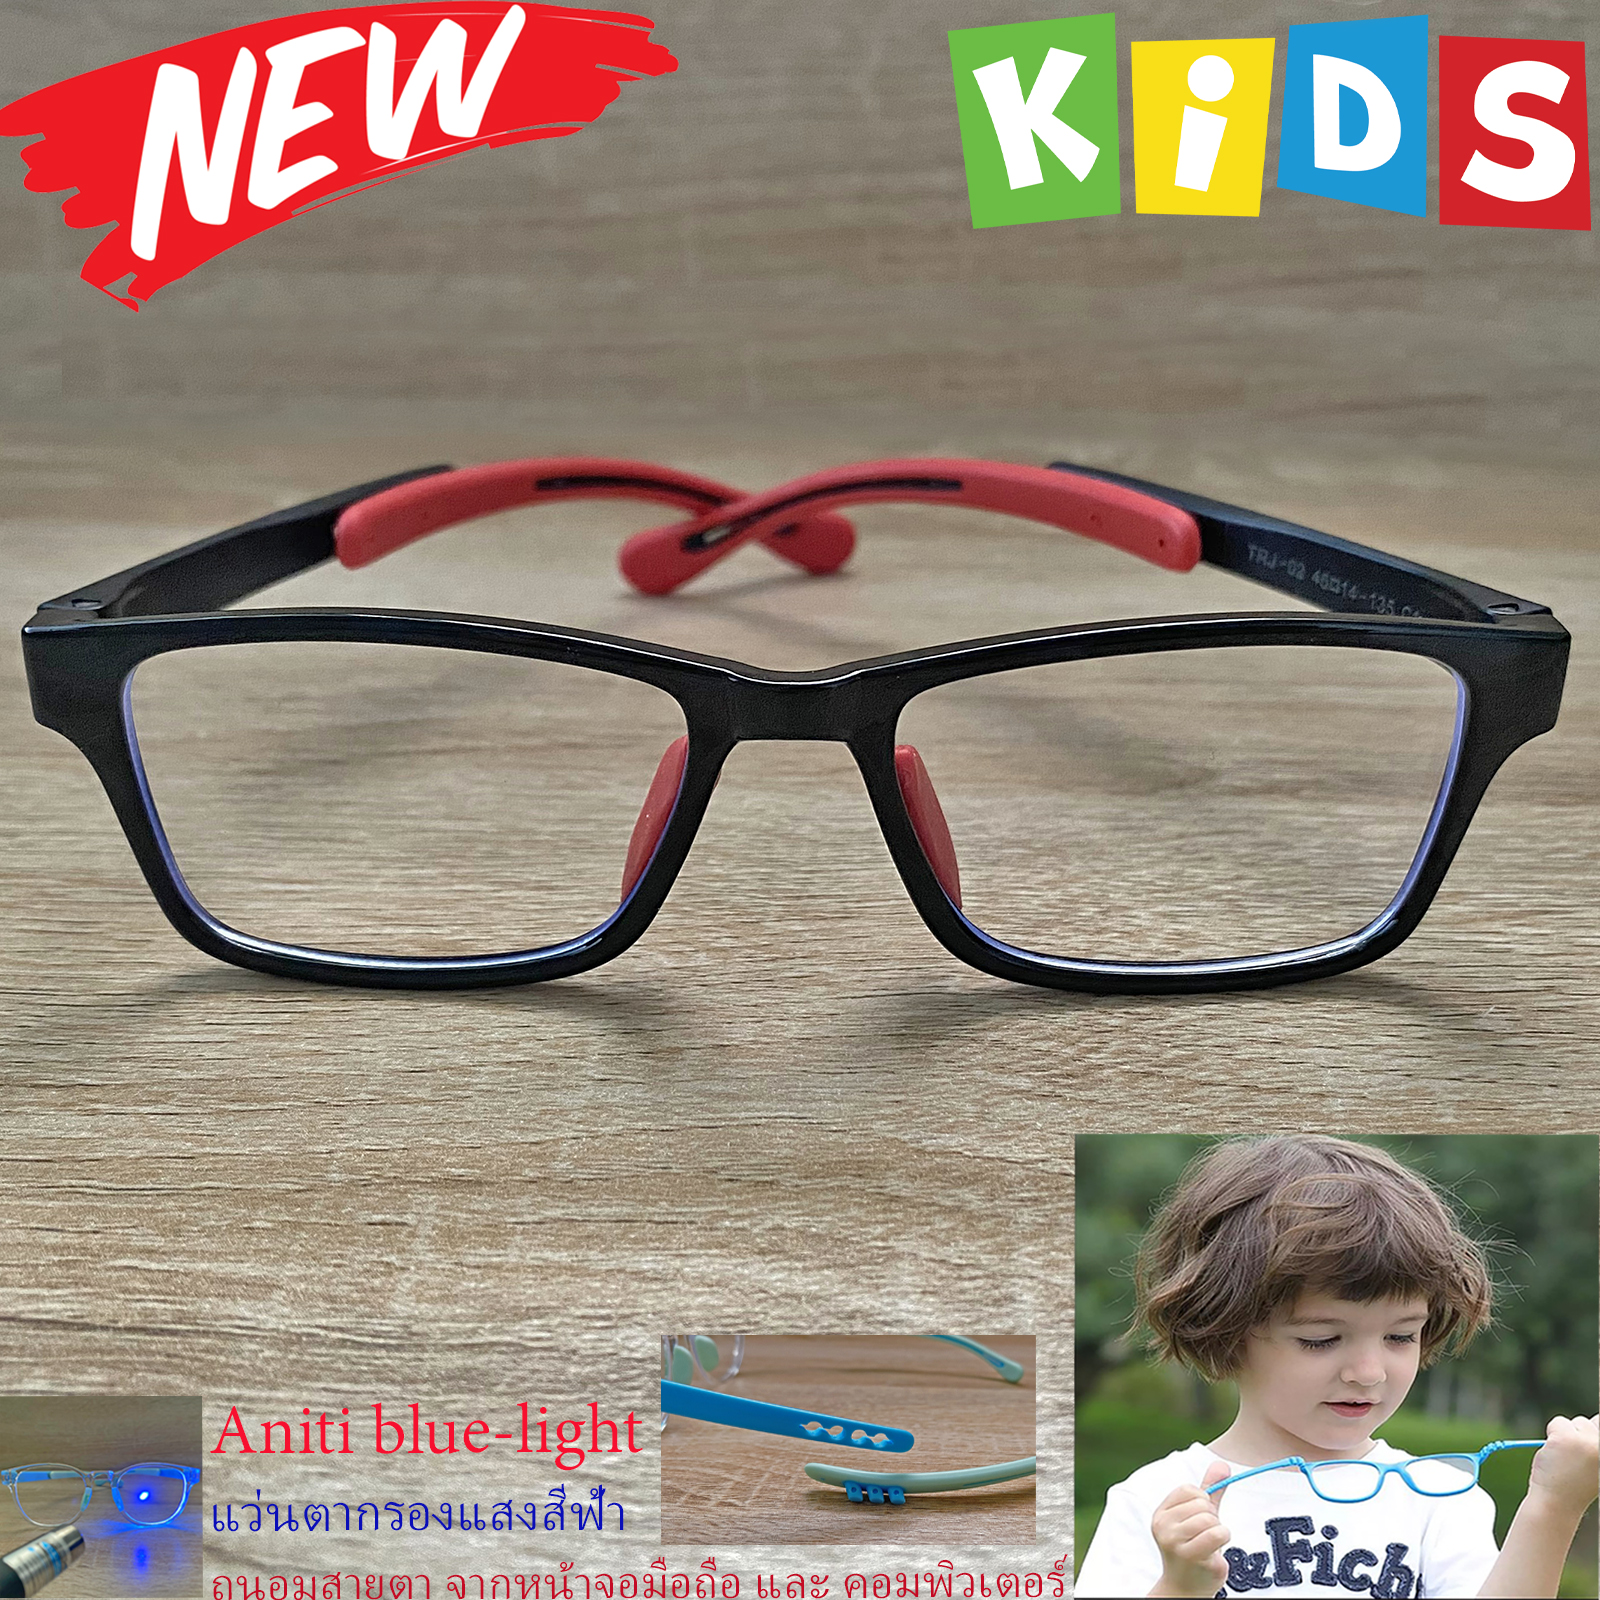 กรอบแว่นตาเด็ก กรองแสง สีฟ้า blue block แว่นเด็ก บลูบล็อค รุ่น 02 สีดำ ขาข้อต่อยืดหยุ่น ขาปรับระดับได้ วัสดุTR90 เหมาะสำหรับเลนส์สายตา